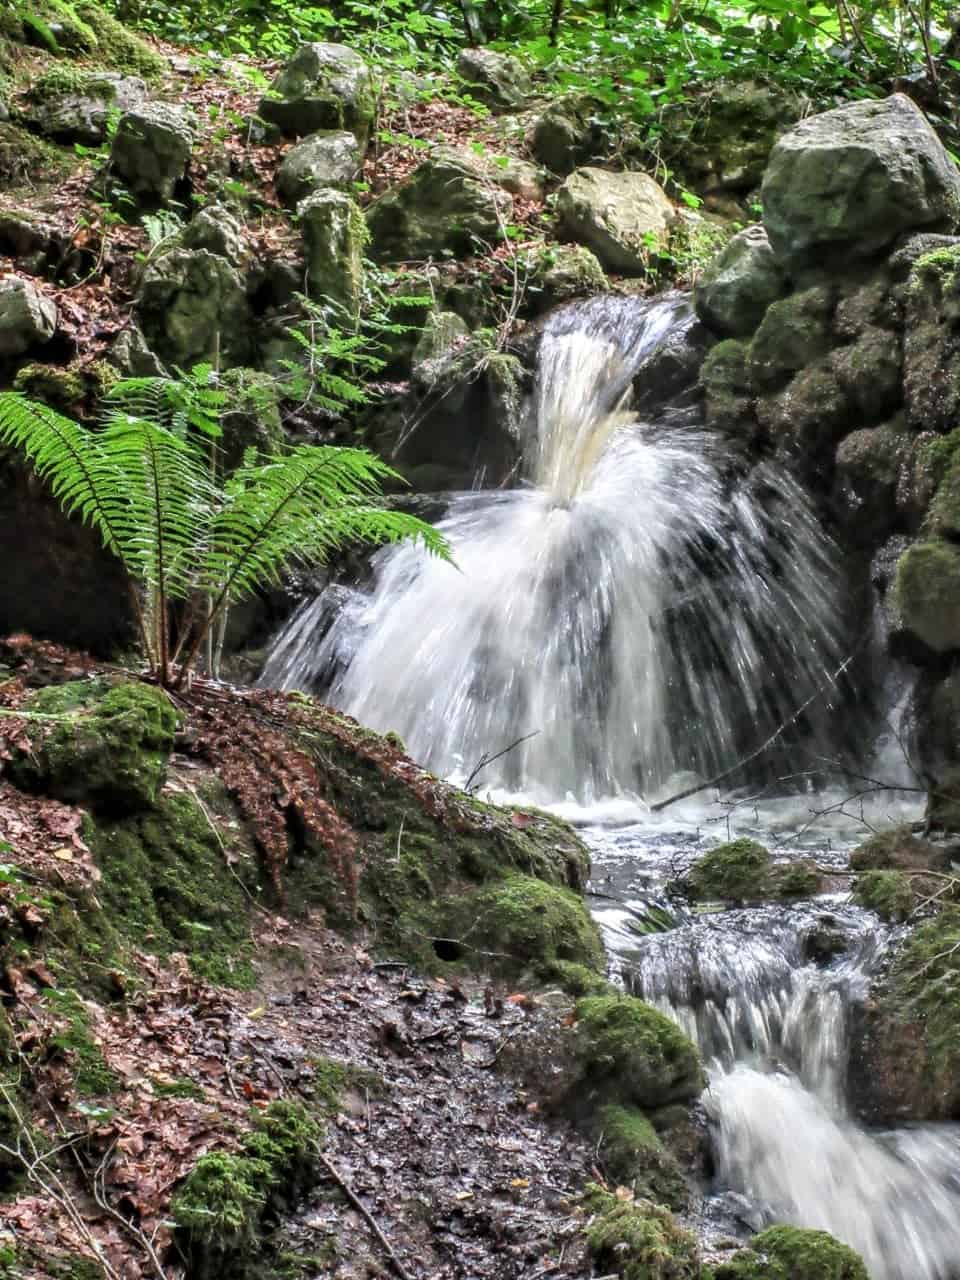 A small waterfall in the Glenballyemon